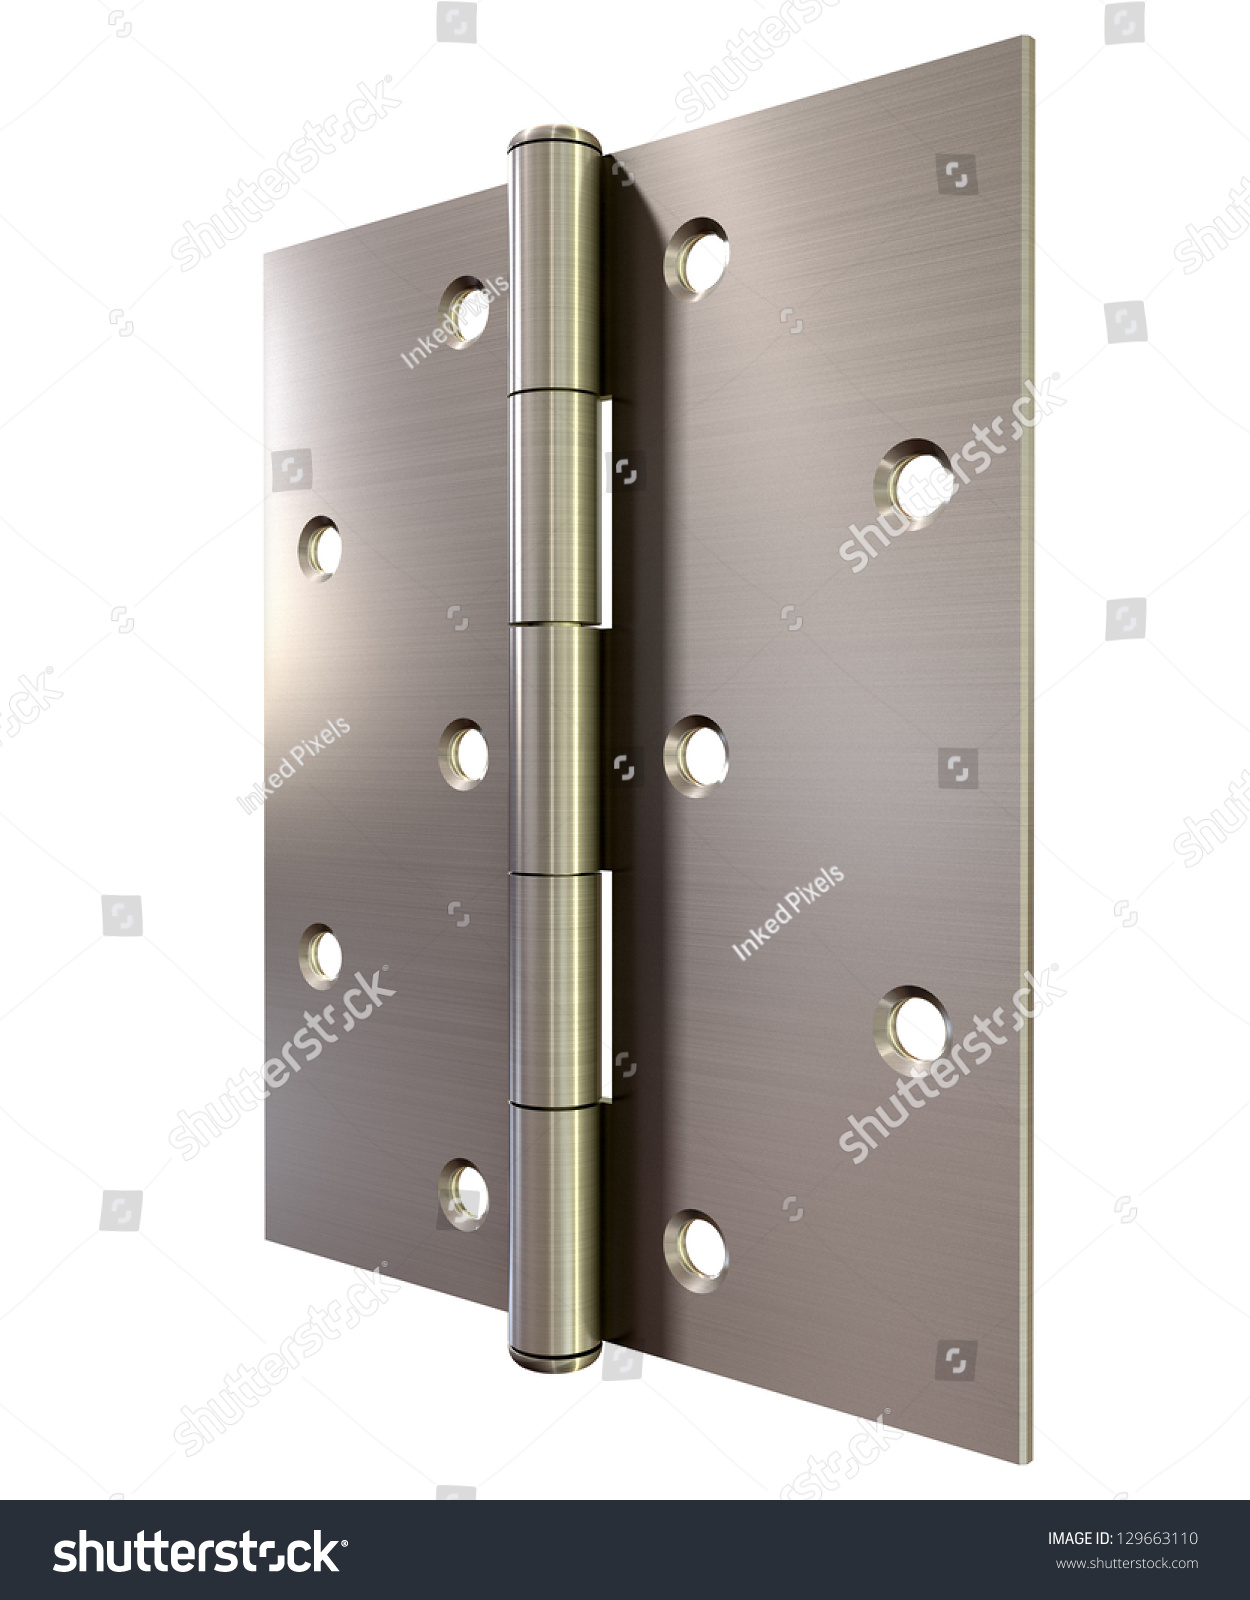 Regular Open Brushed Metal Door Hinge Stock Illustration 129663110 ...